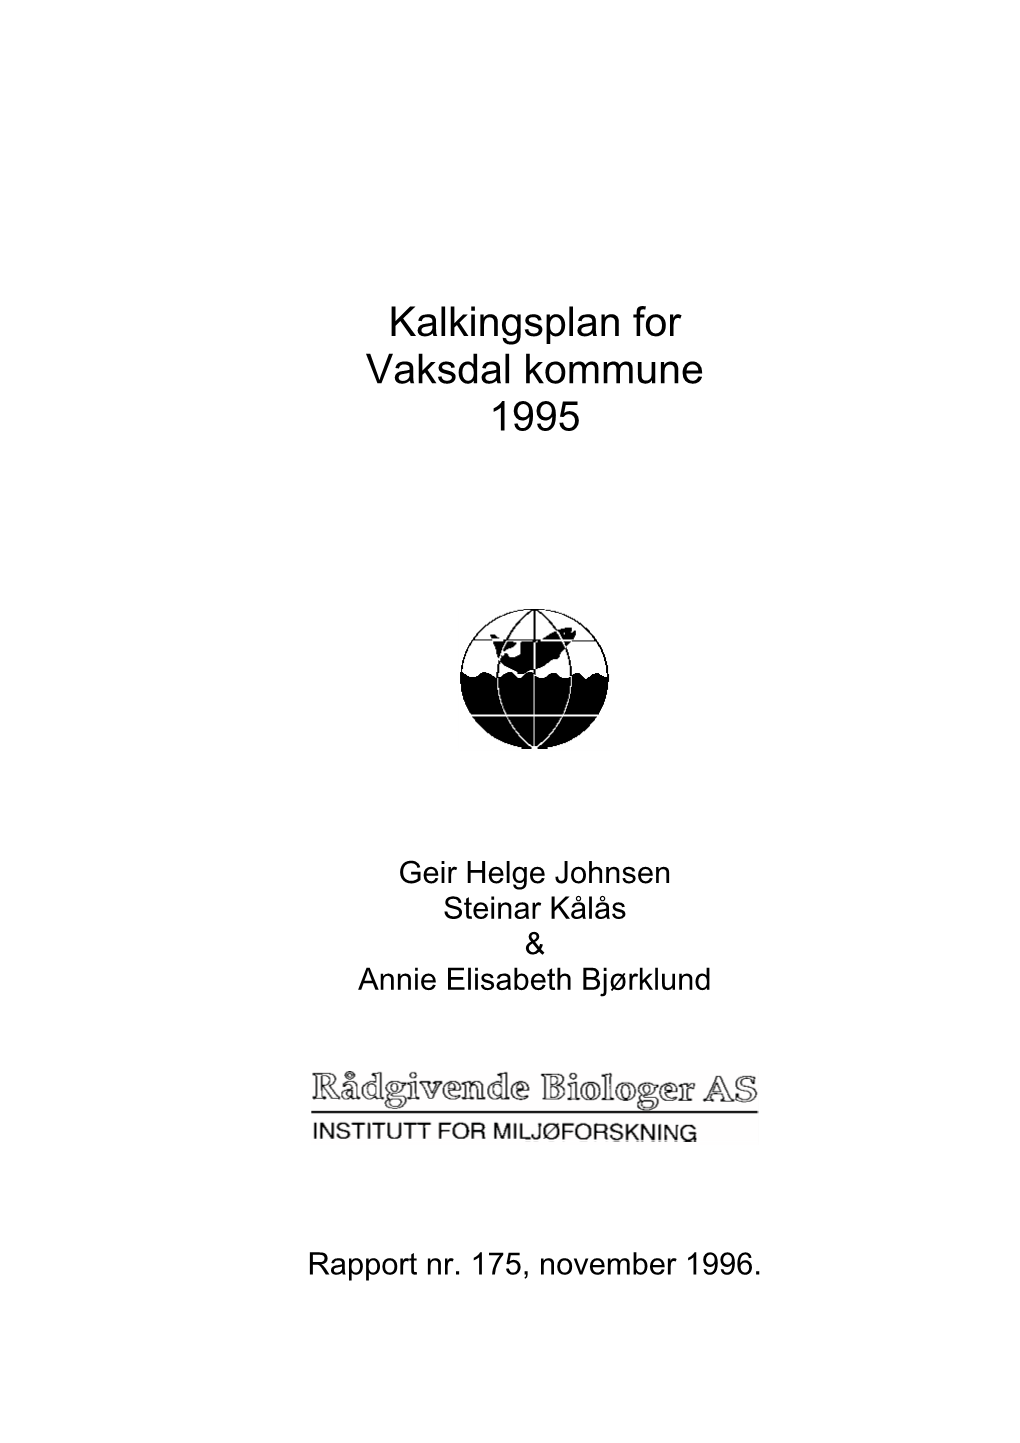 Kalkingsplan for Vaksdal Kommune 1995